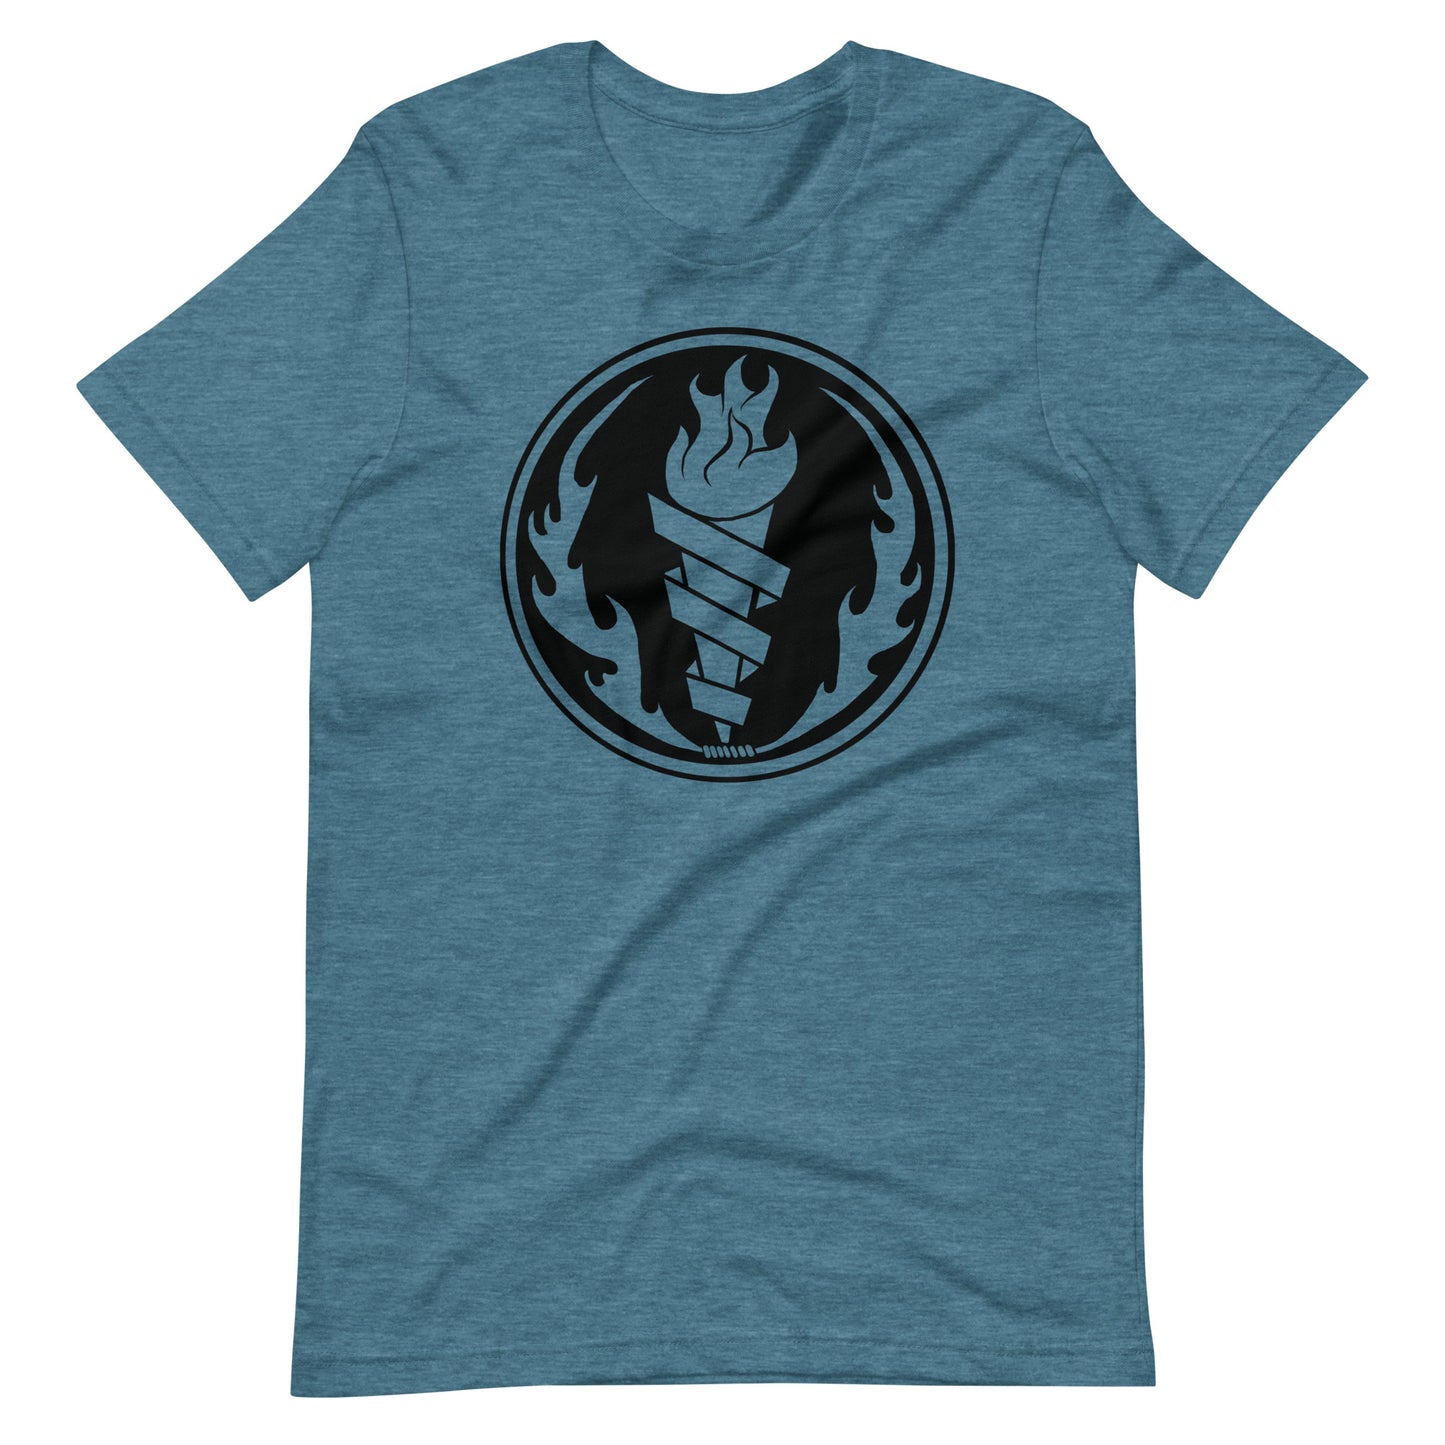 Fire Fire Black - Men's t-shirt - Heather Deep Teal Front